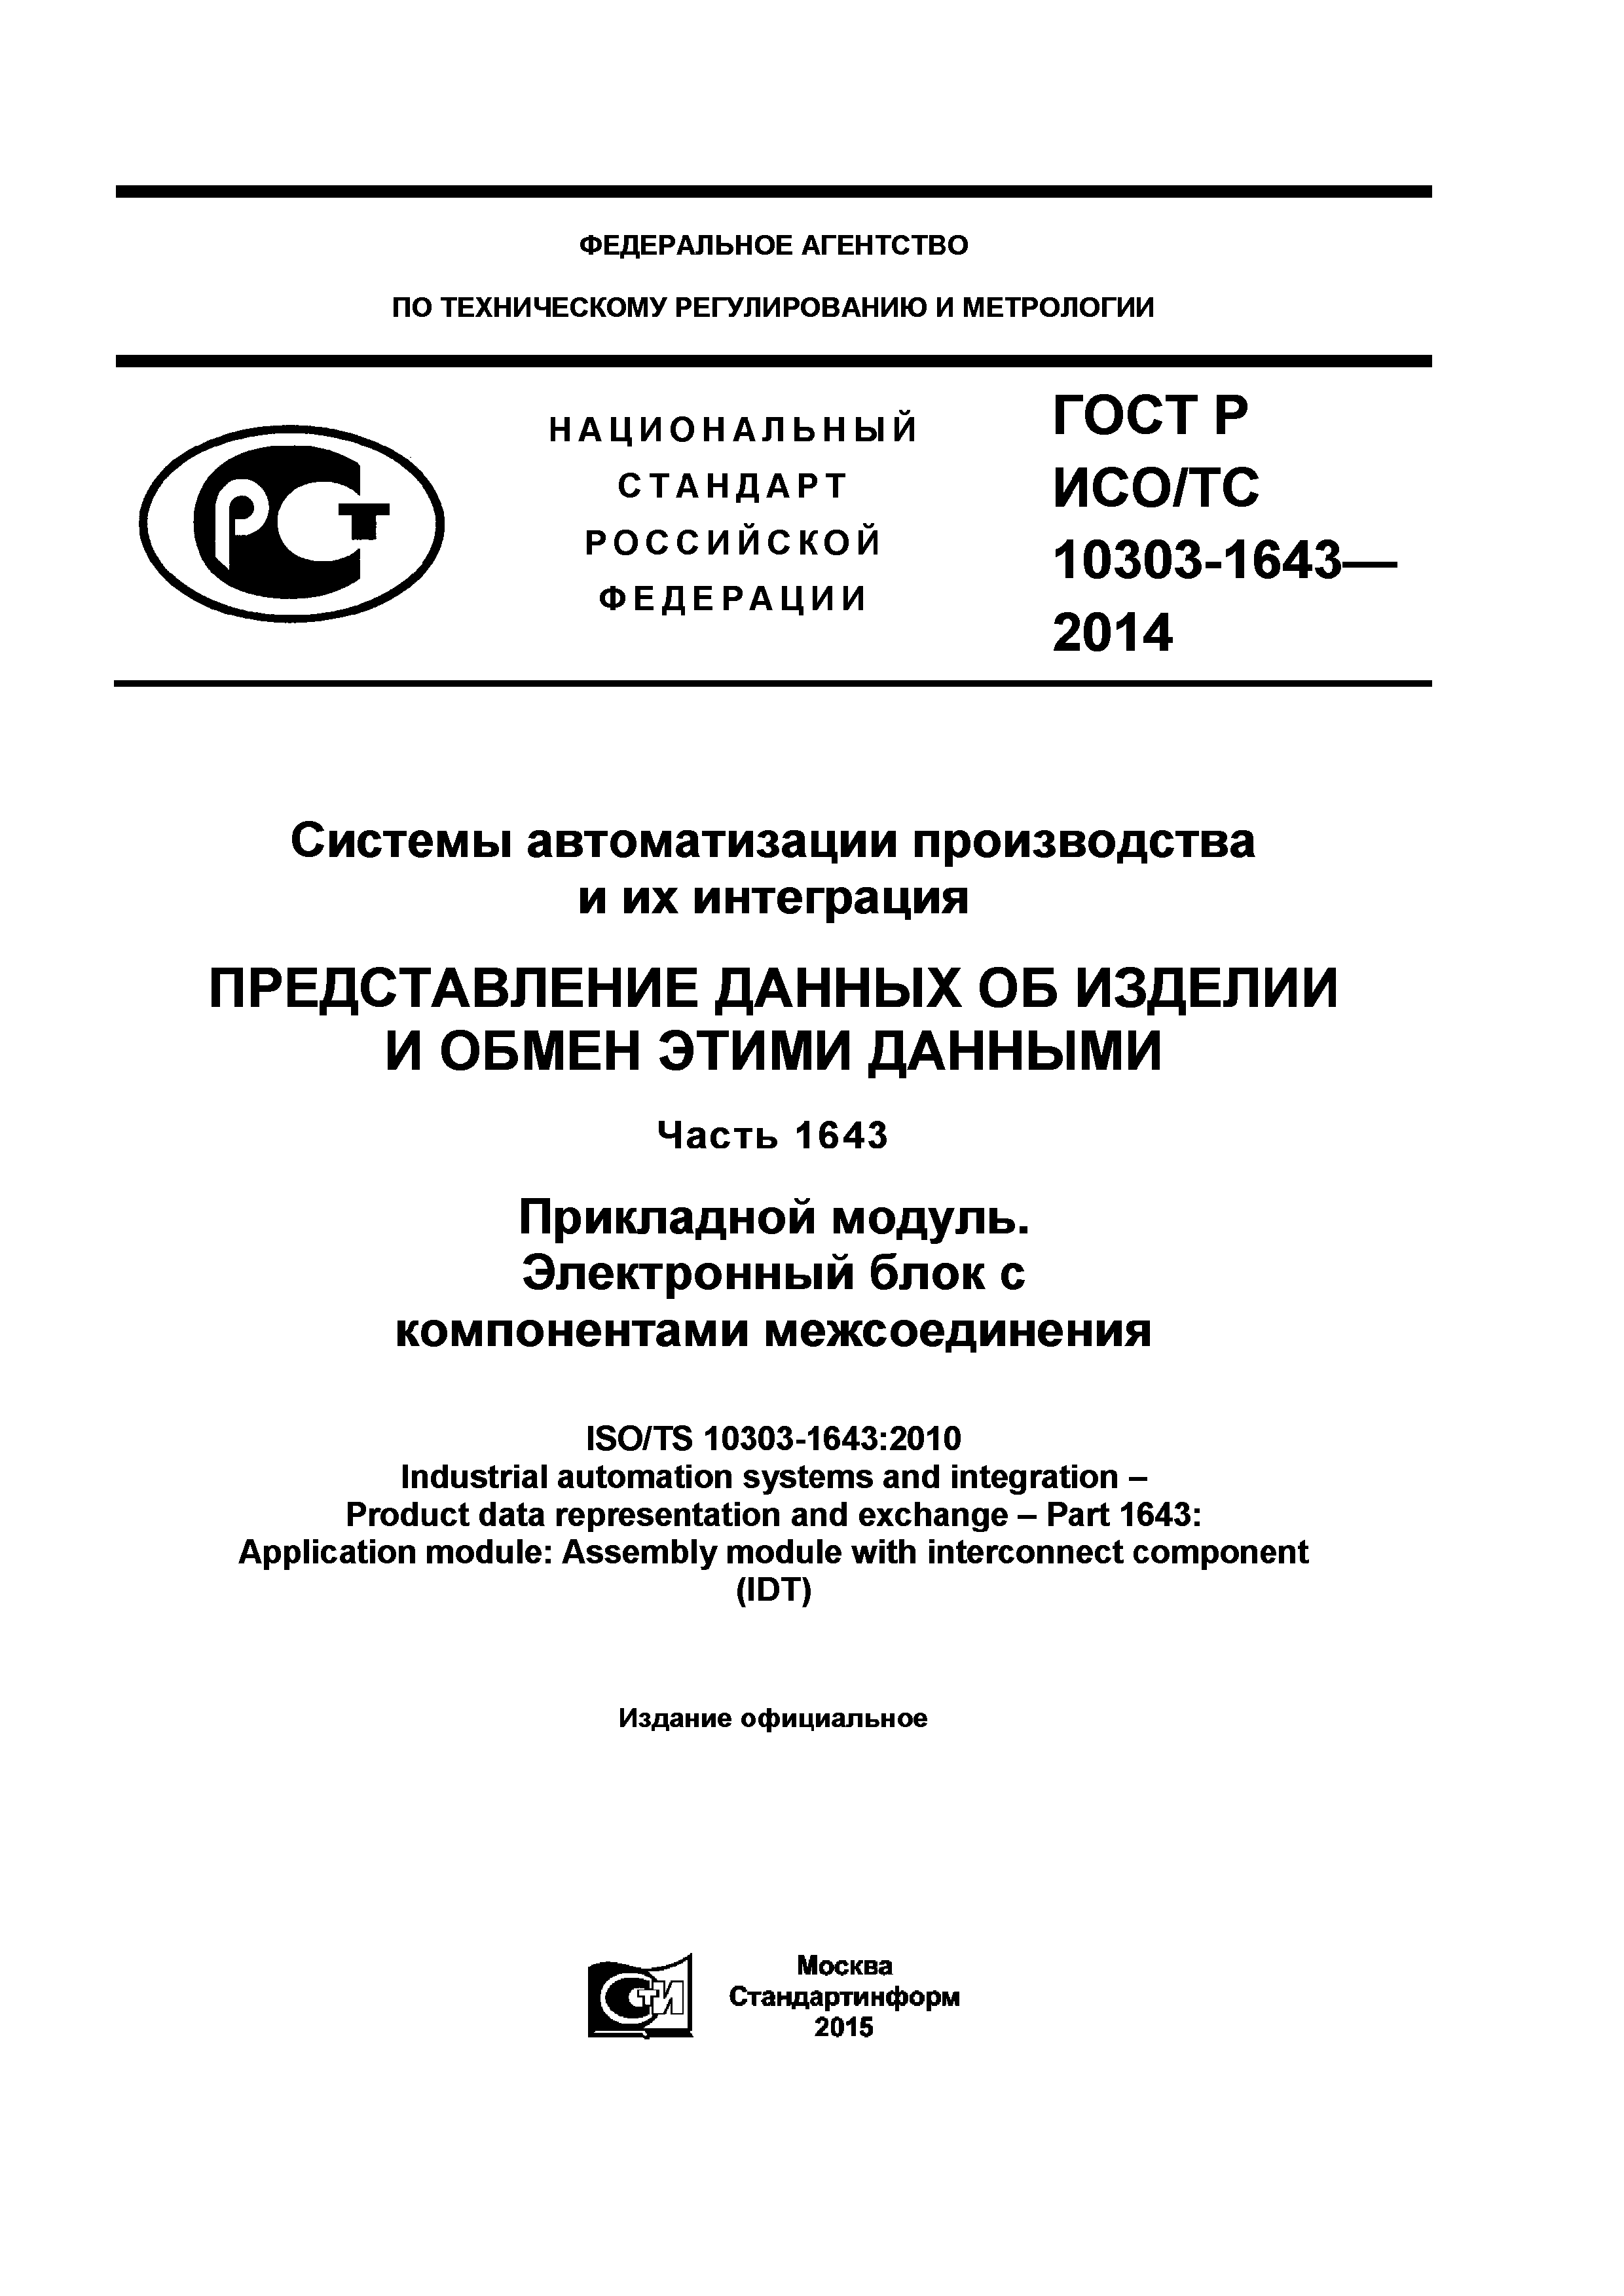 ГОСТ Р ИСО/ТС 10303-1643-2014